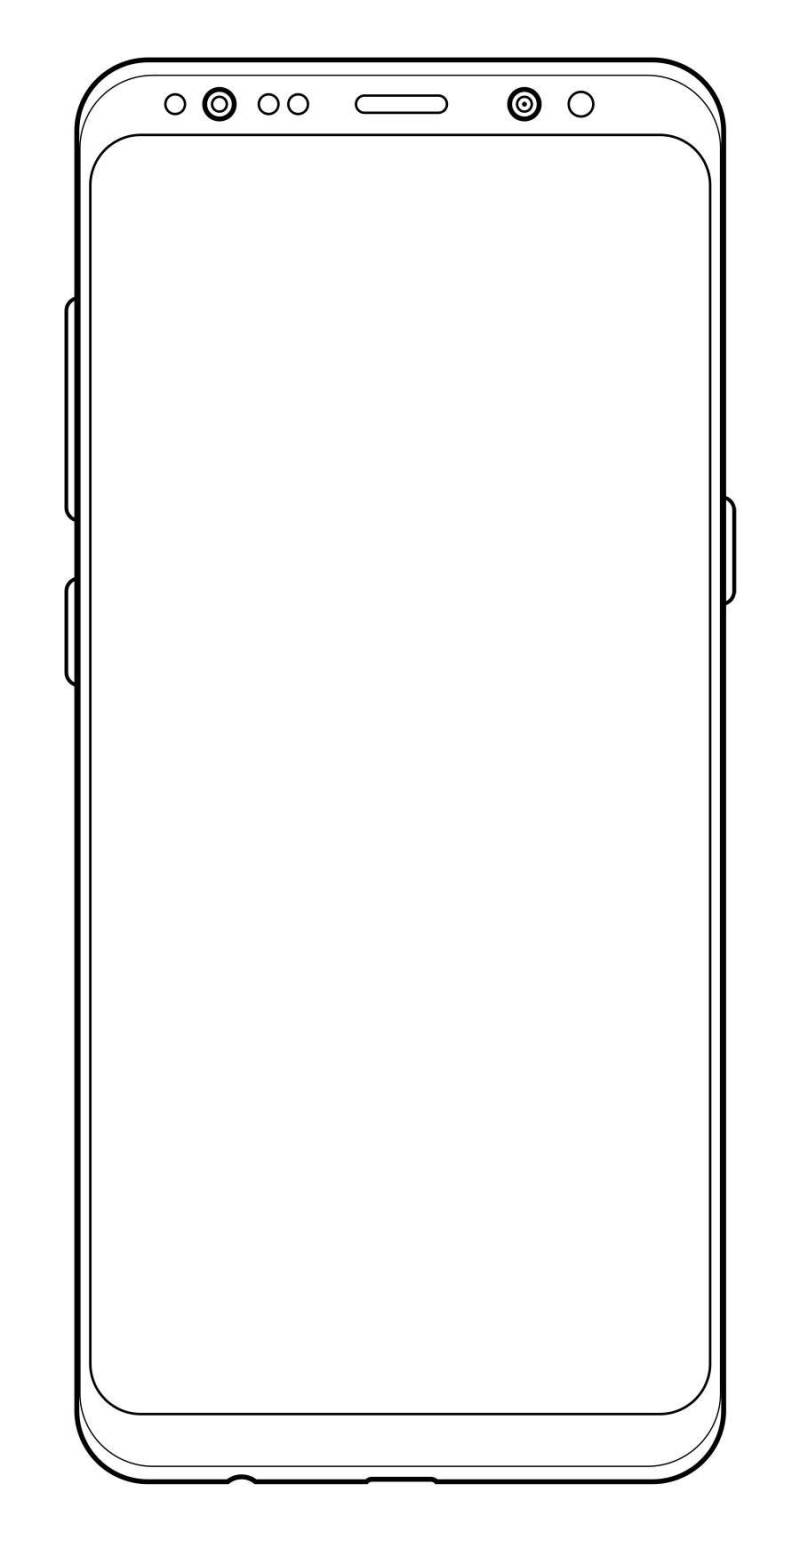 三星 Galaxy S8 线框图